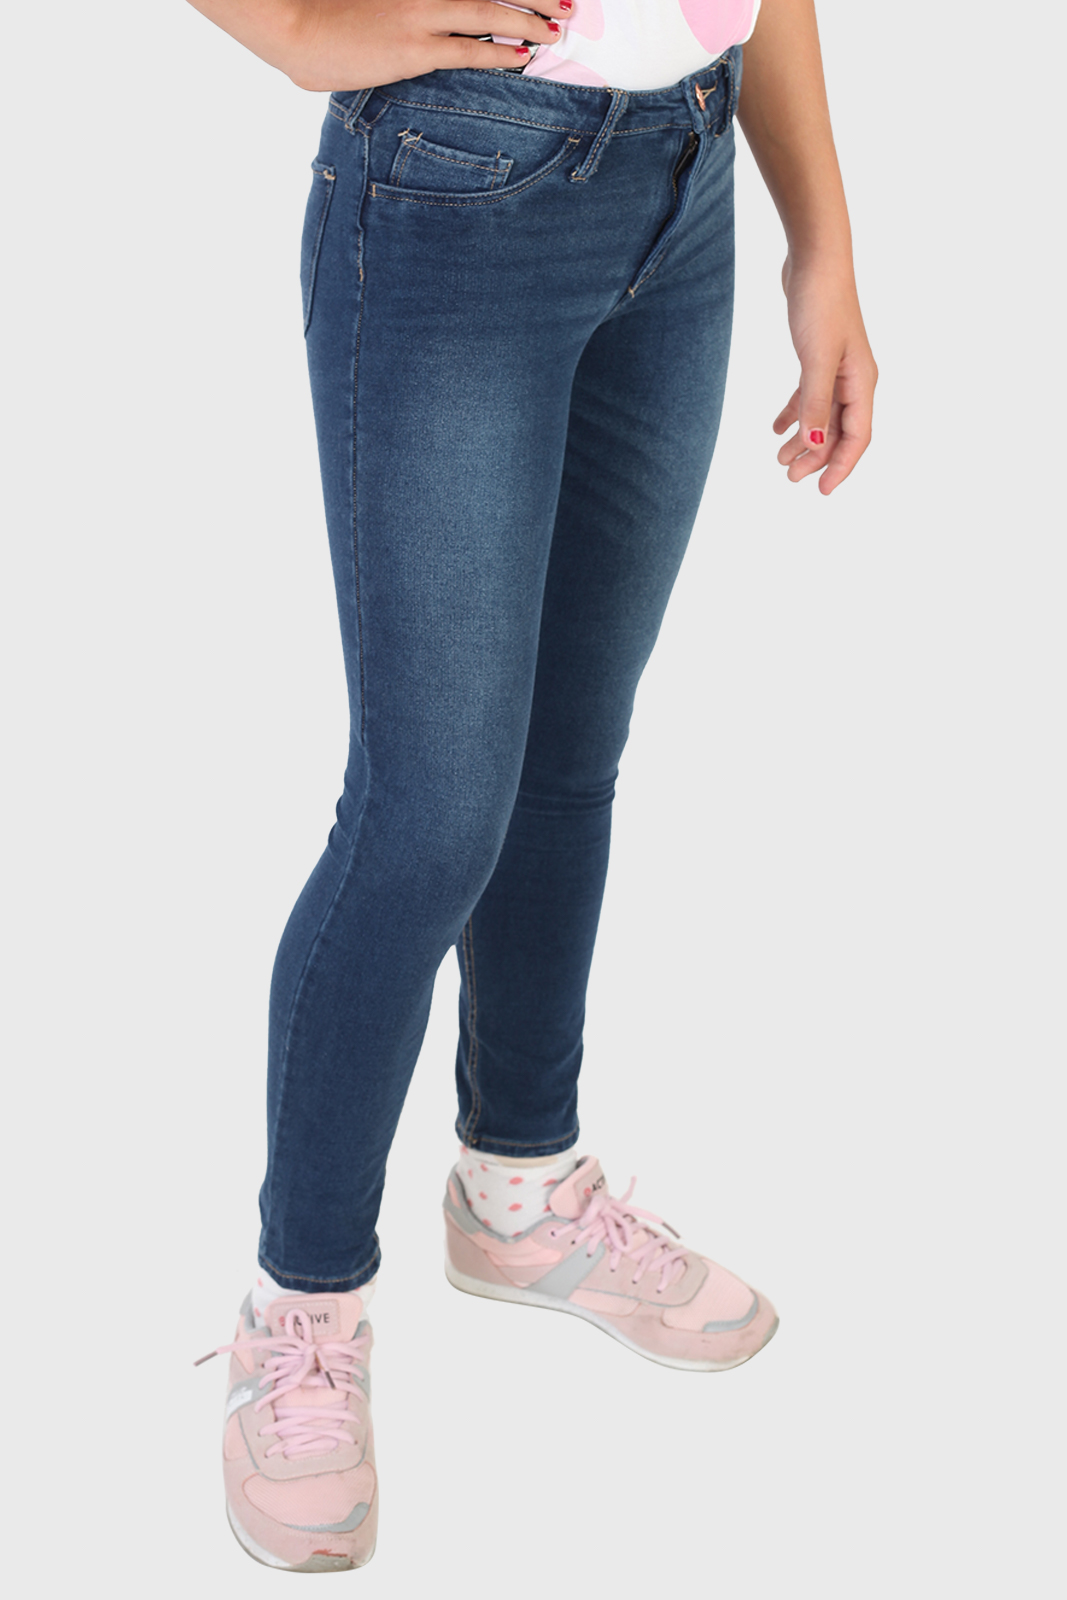 Недорогие джинсы для девочки от ТМ &Denim